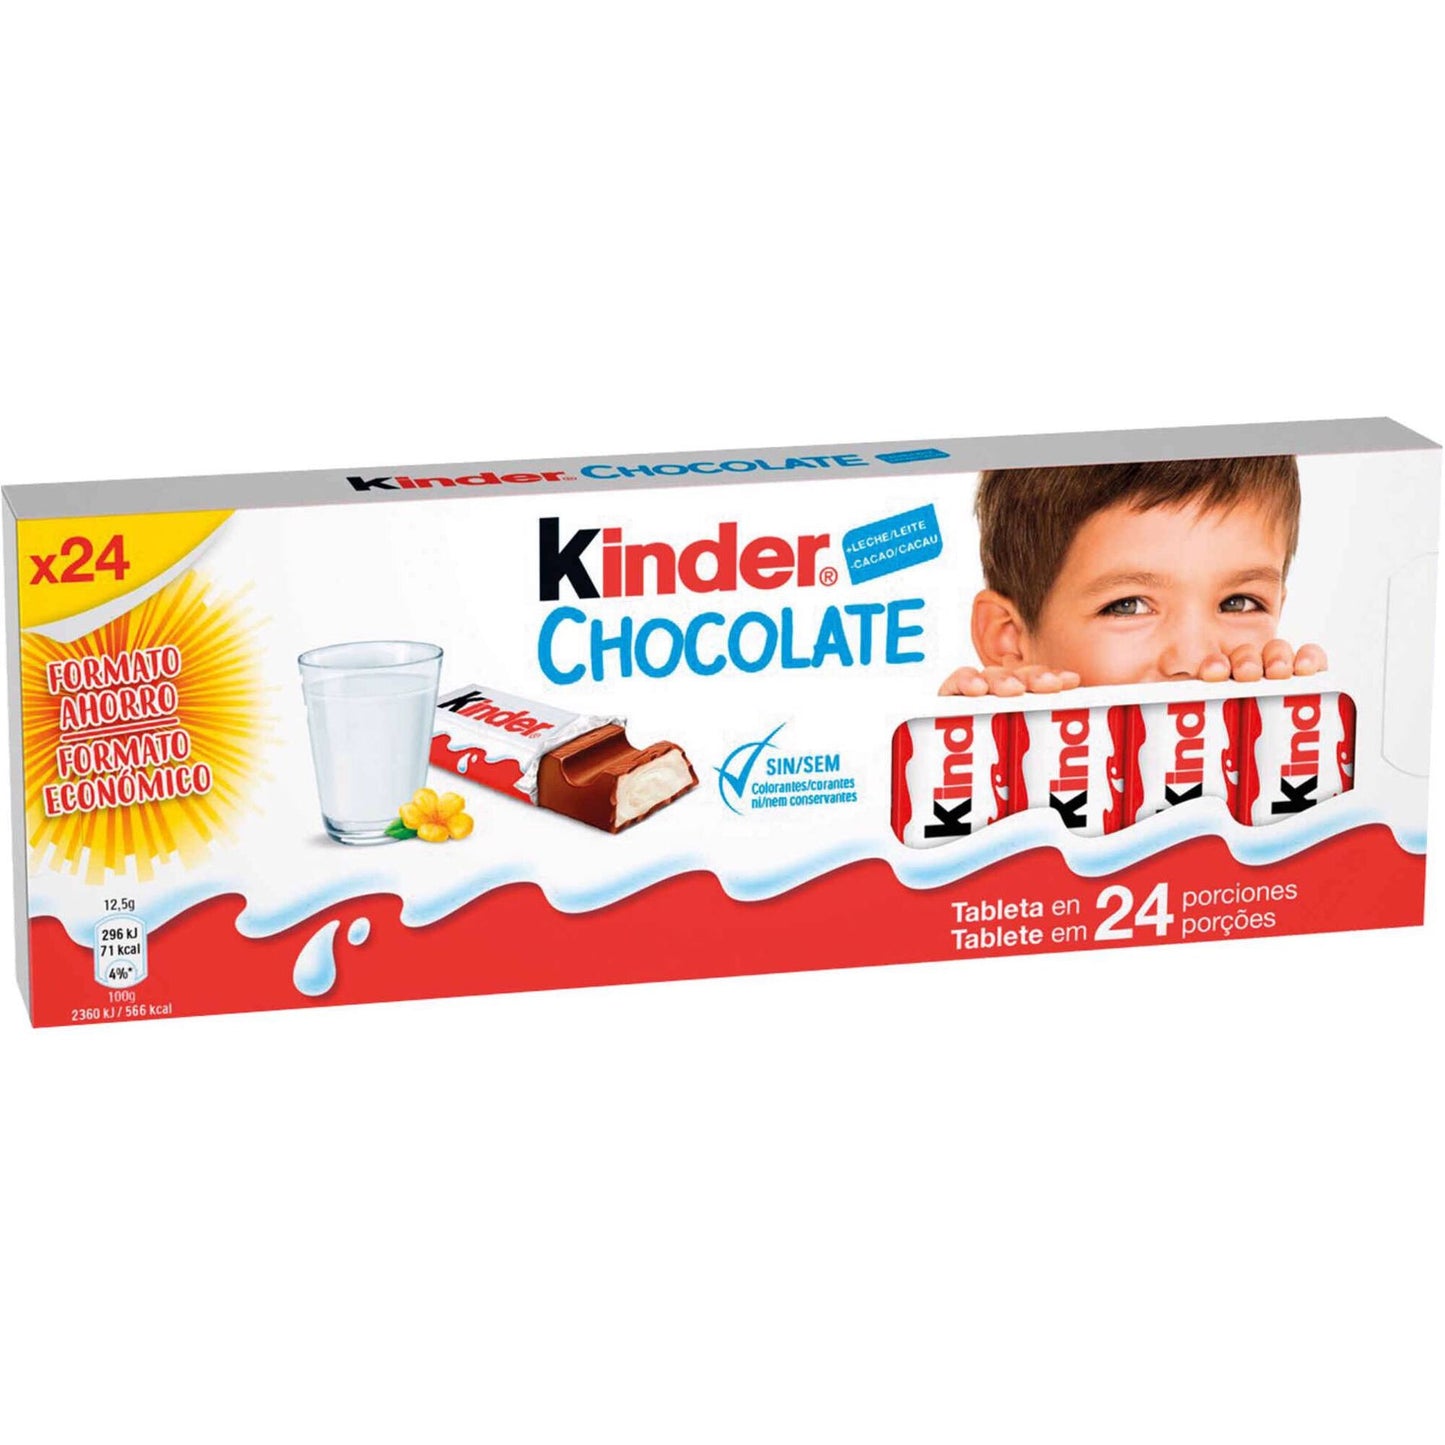 Lanche de Chocolate ao Leite Kinder 24 x 12,5 gr